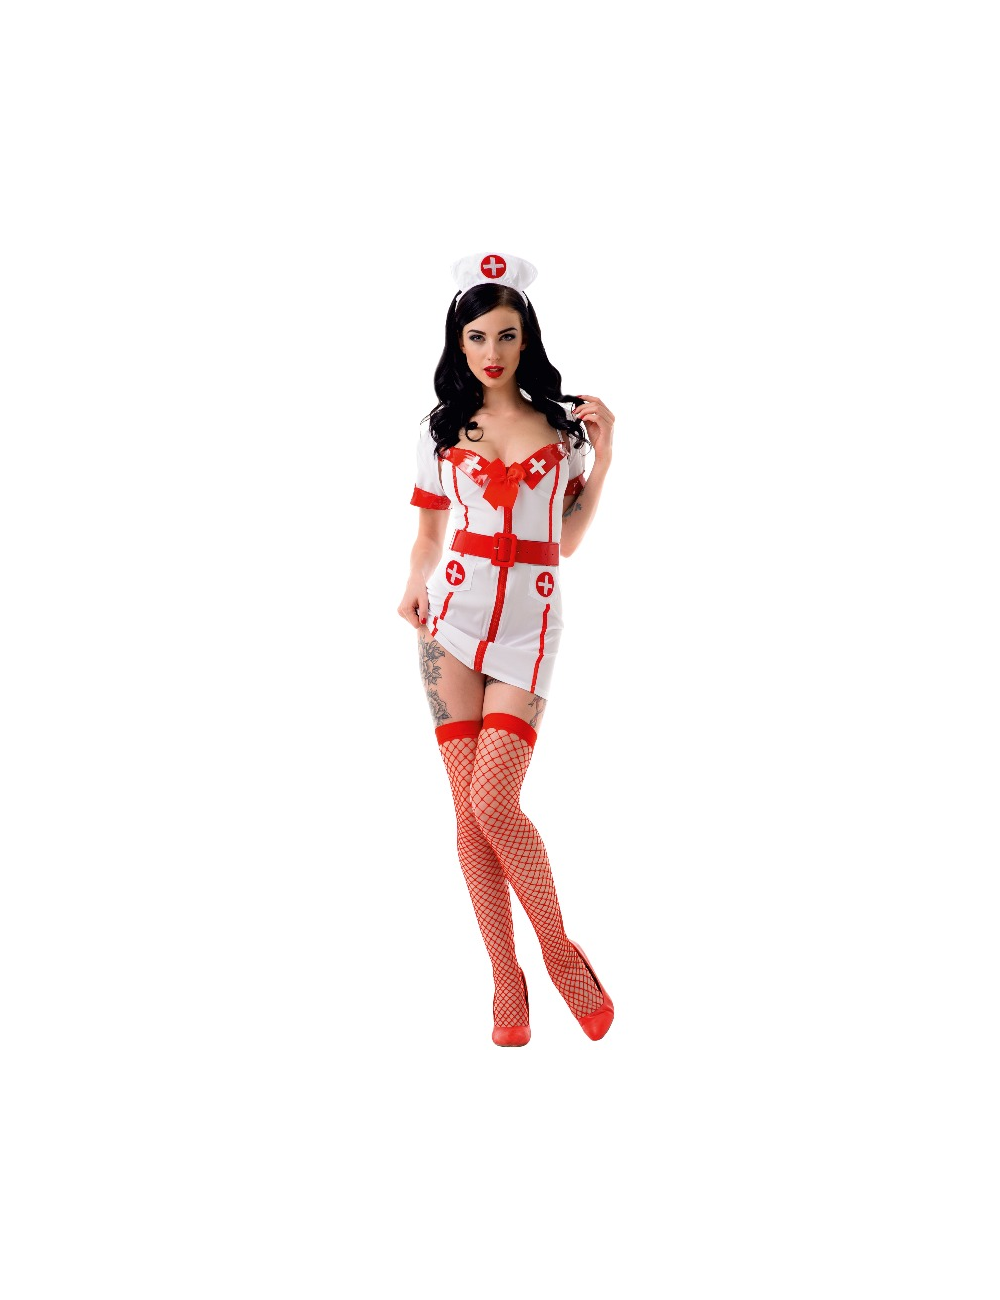 Le frivole - 02196 costume infirmière ensemble 4 pièces l / xl